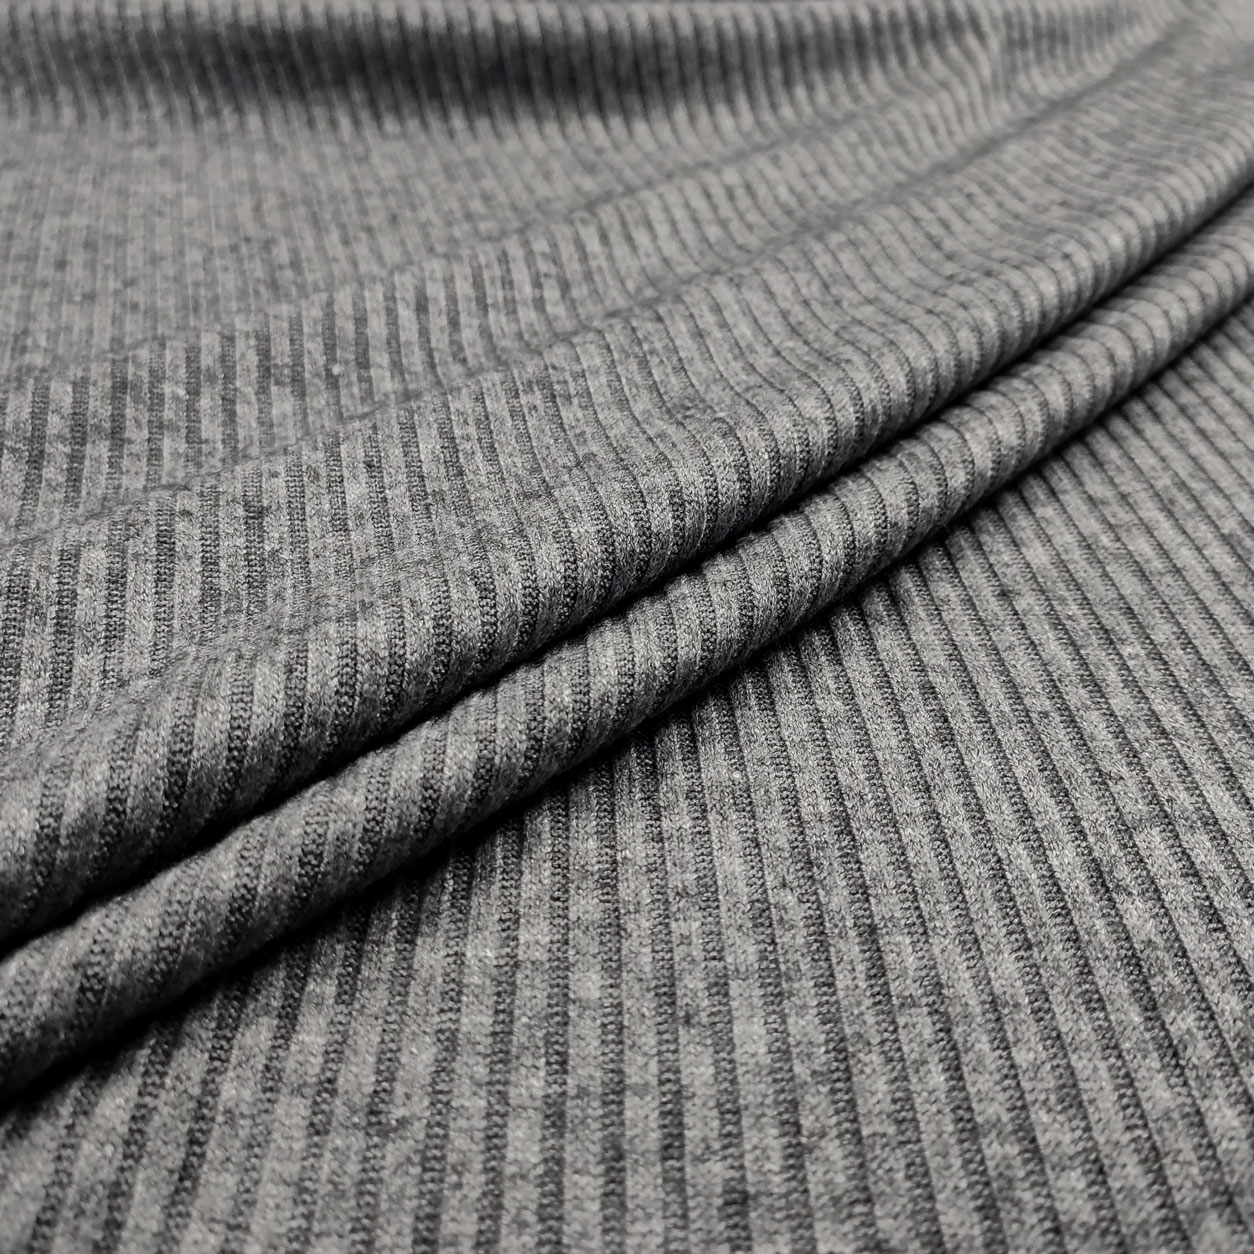 Tessuto a maglia canettata grigio